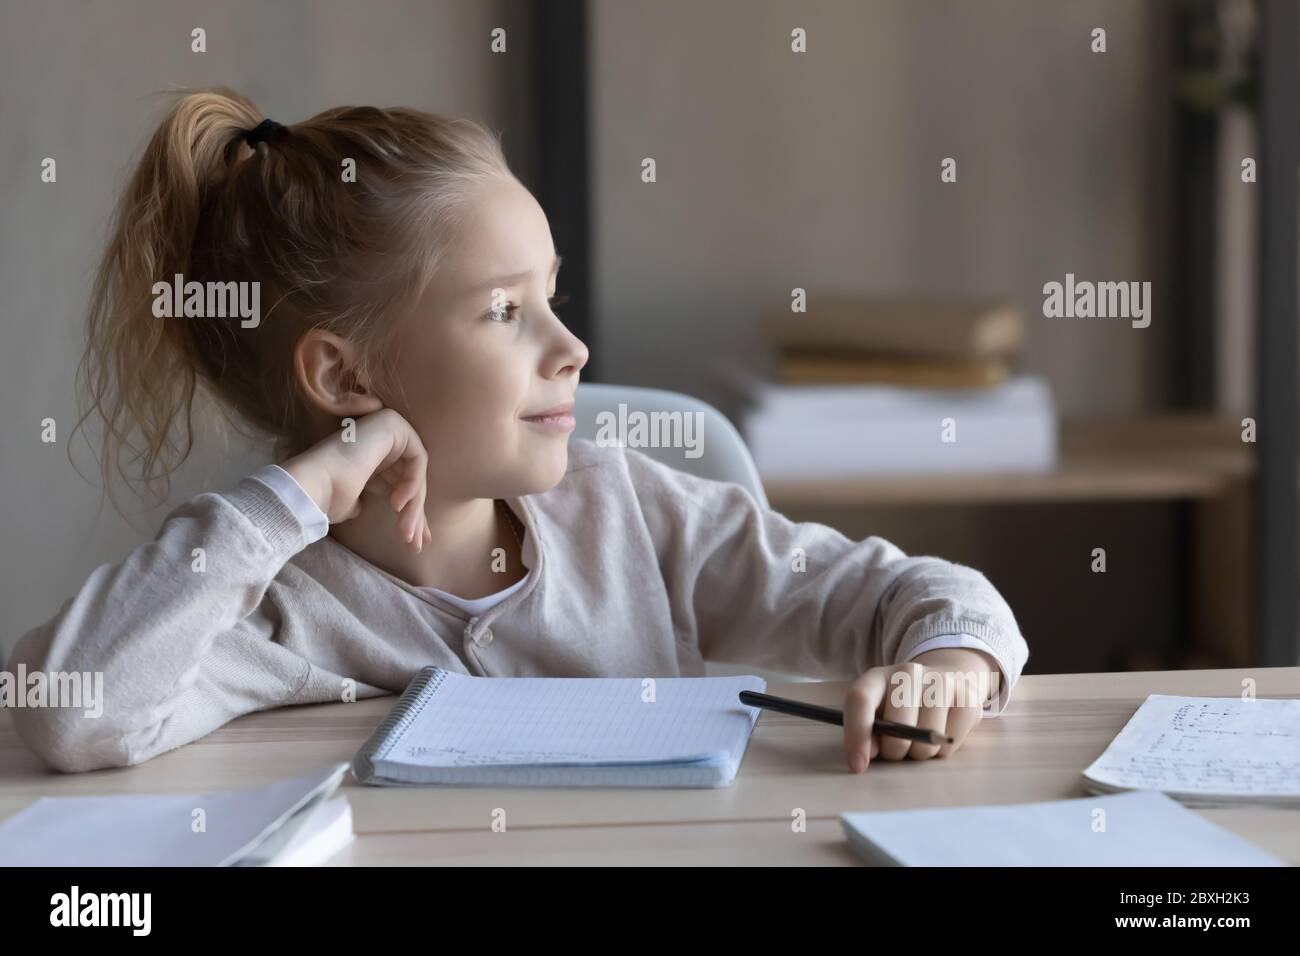 Petite fille rêveuse distraite d'étudier à la maison Banque D'Images